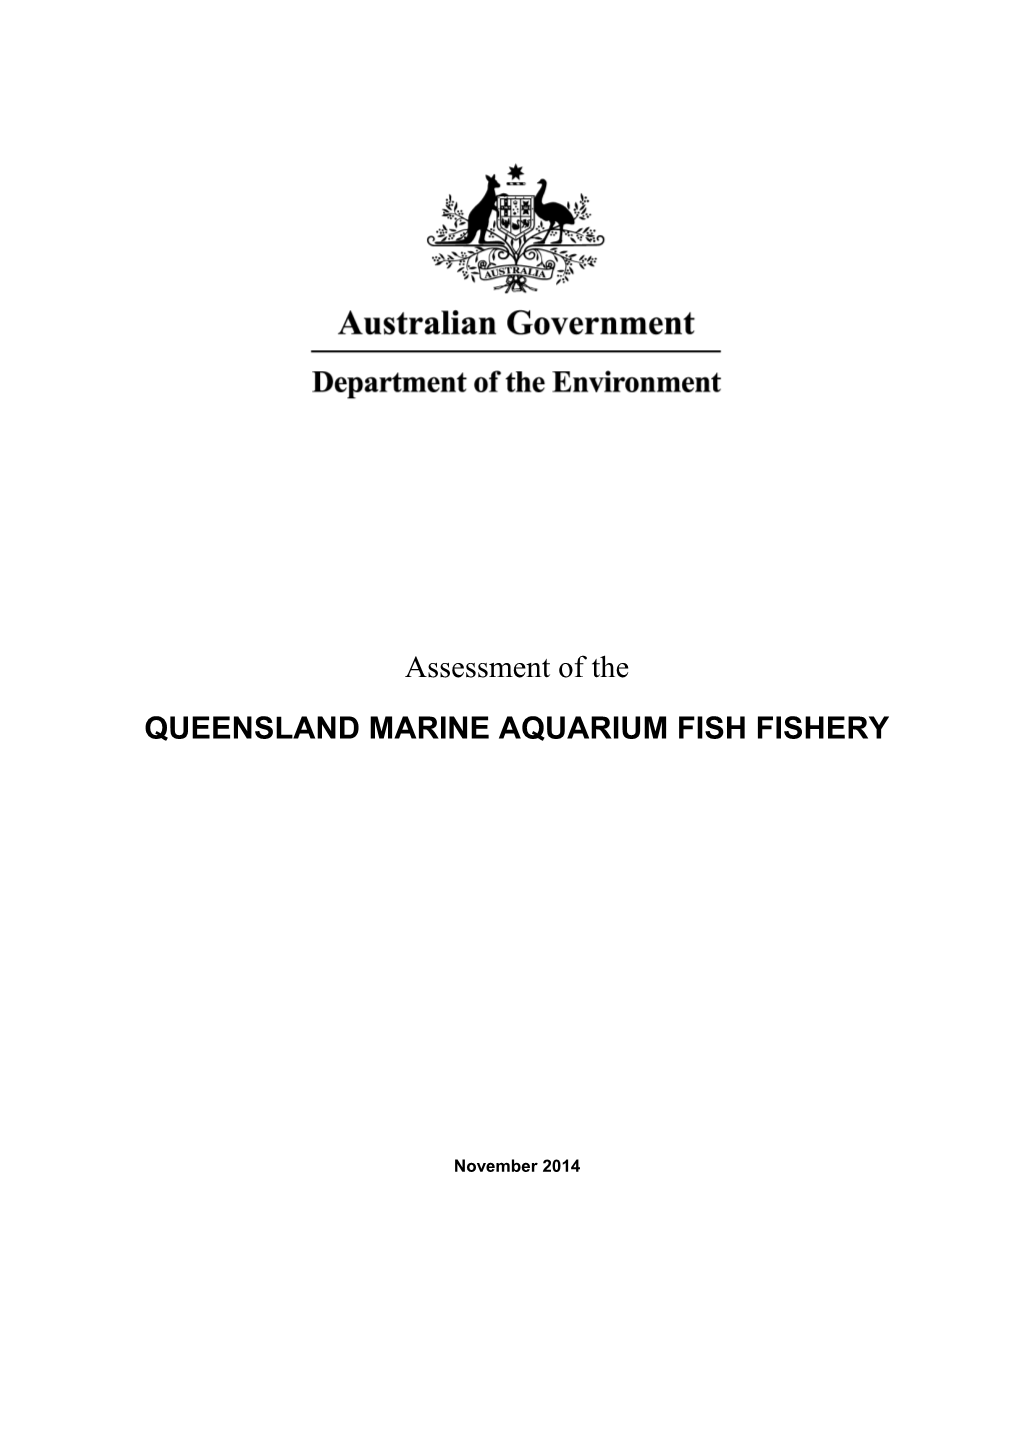 Assessment of the Queensland Marine Aquarium Fish Fishery